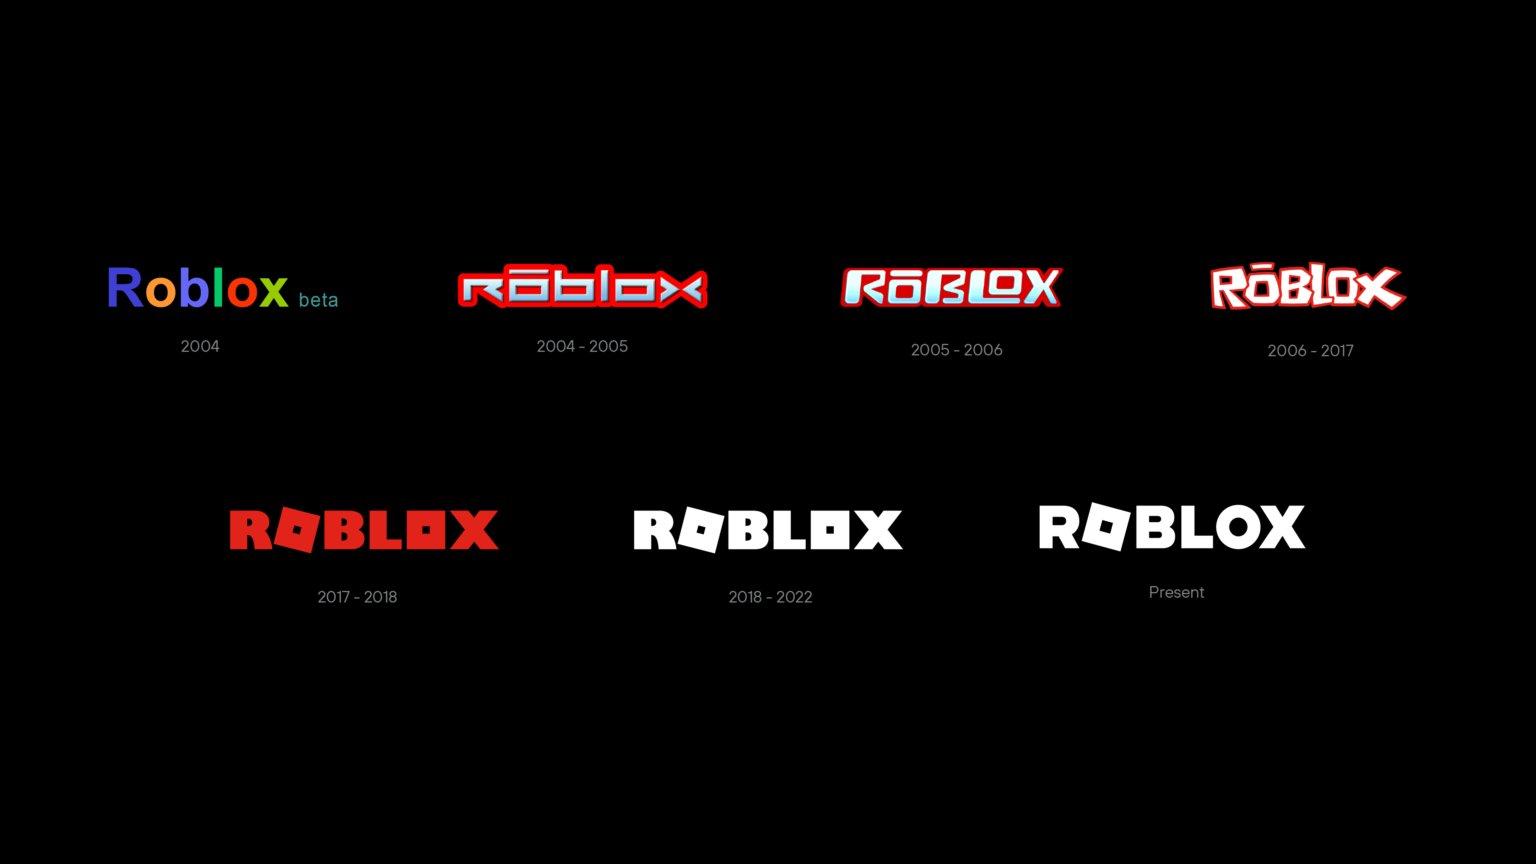 Diseño del logotipo de Roblox - Historia, significado y evolución